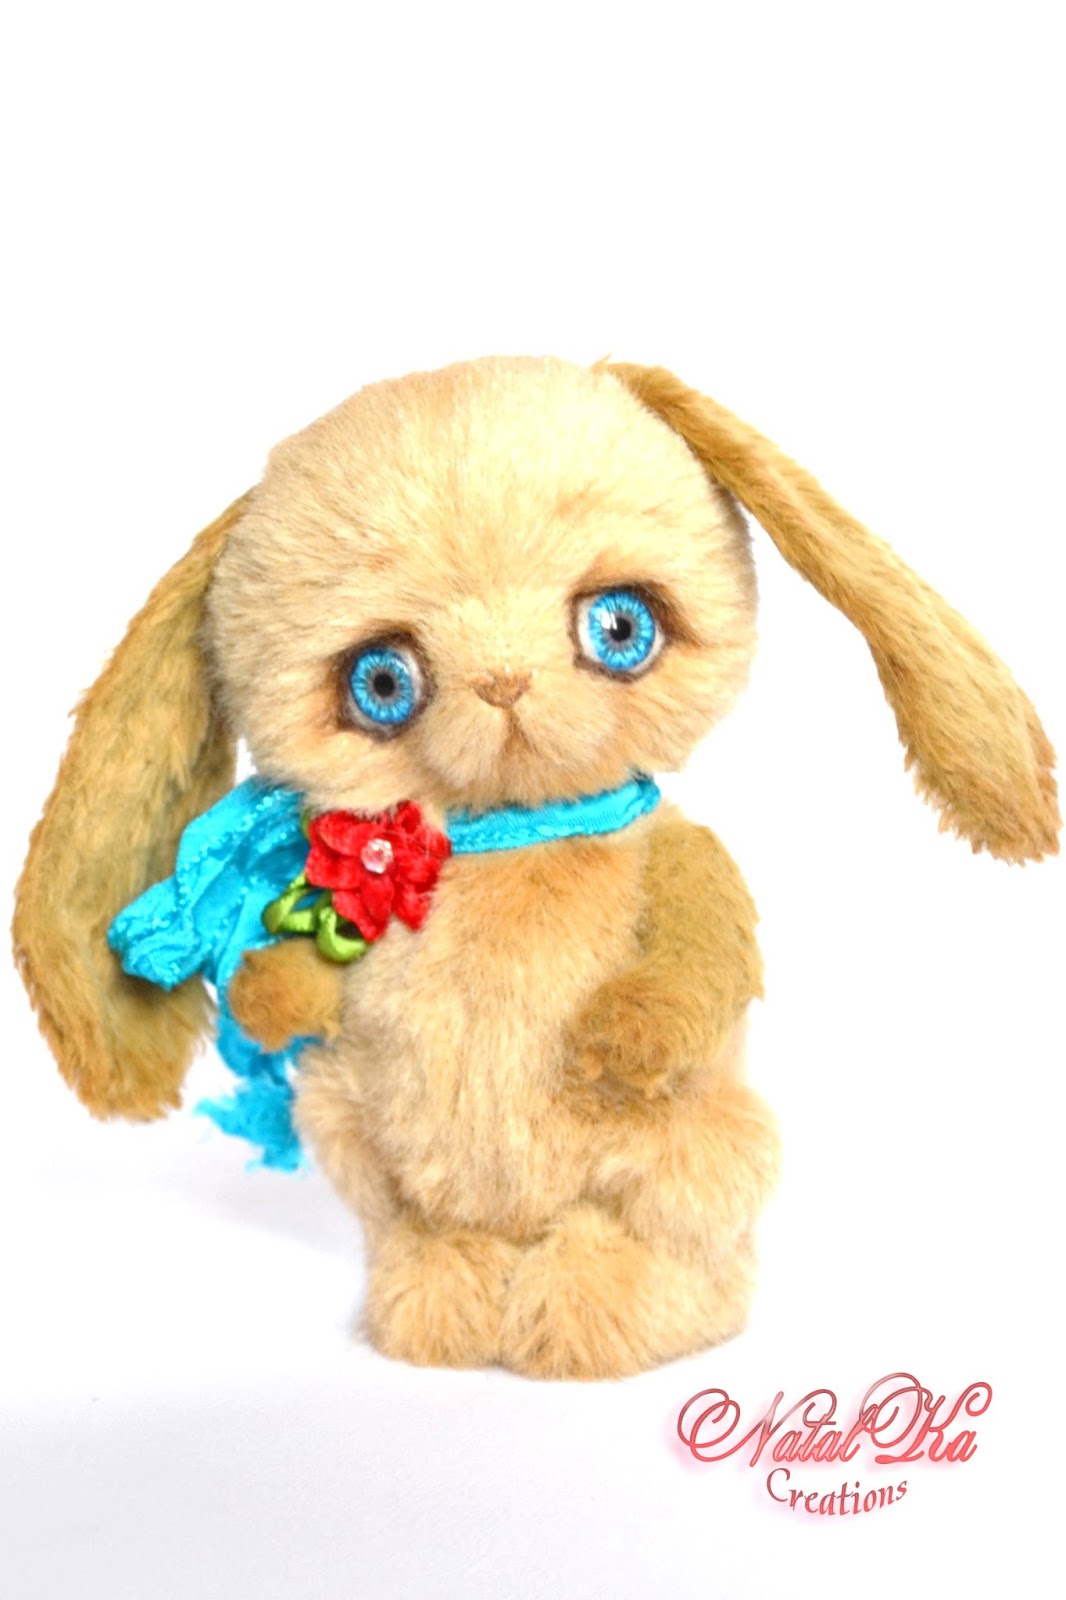 Artist teddy bunny, rabbit handmade, jointed, ooak, Künstlerteddy, Künstlerhase, Teddybär, handgemacht von NatalKa Creations